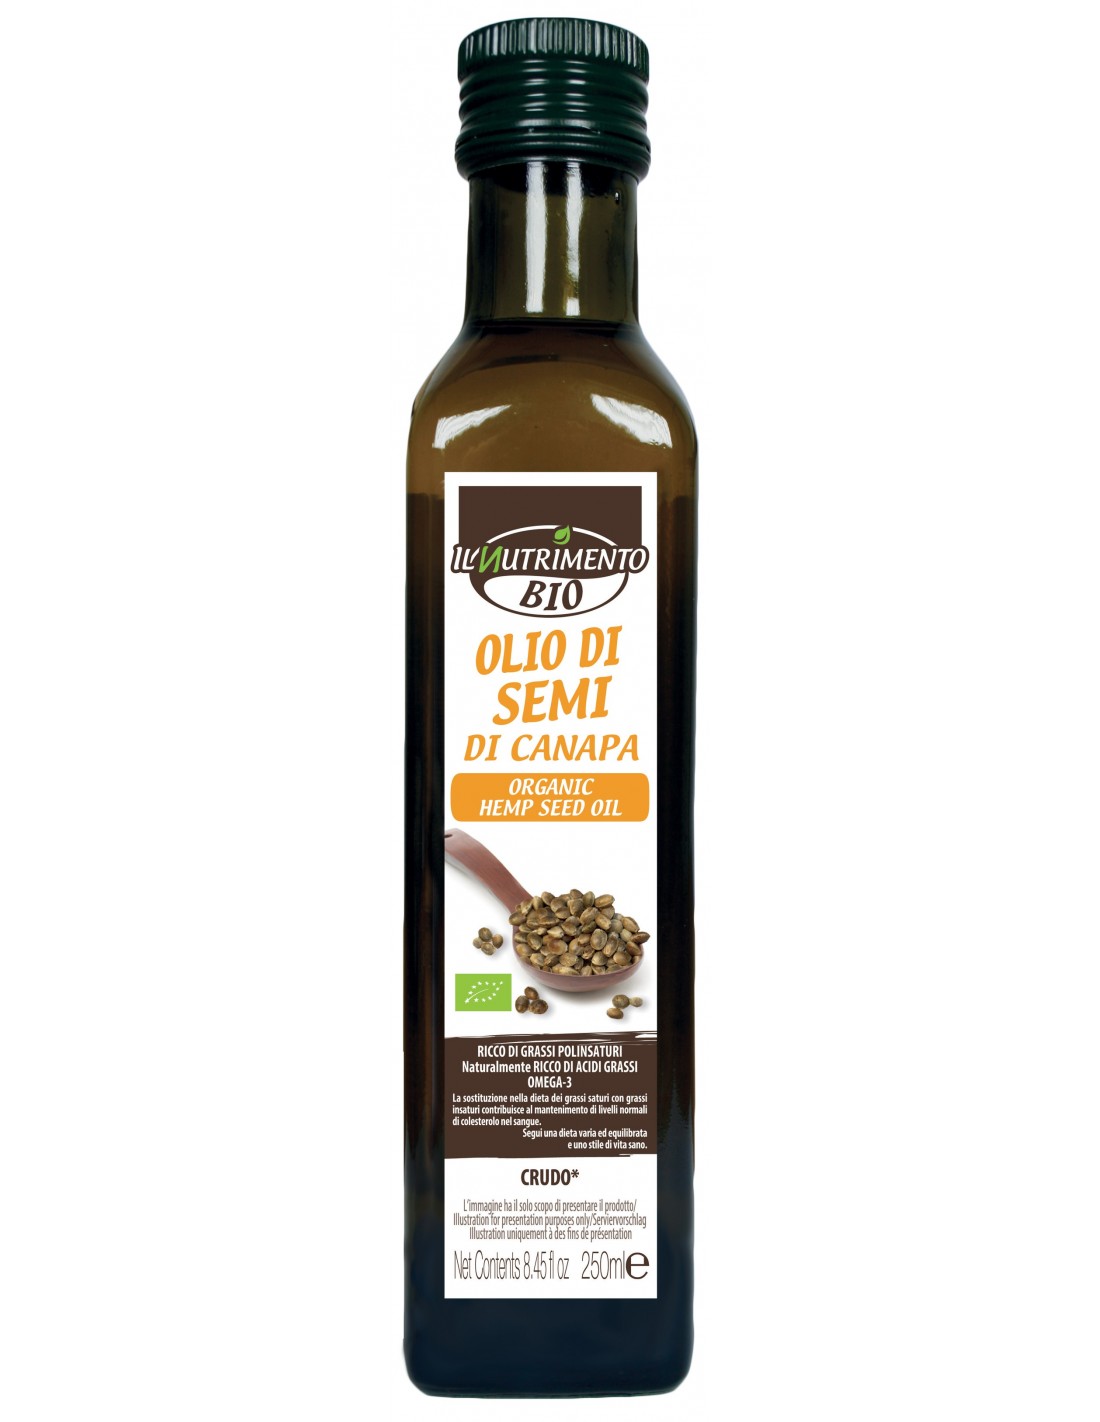 Dầu Hạt Gai Dầu thô hữu cơ 250ml Il Nutrimento Organic Raw Hemp Seed Oil